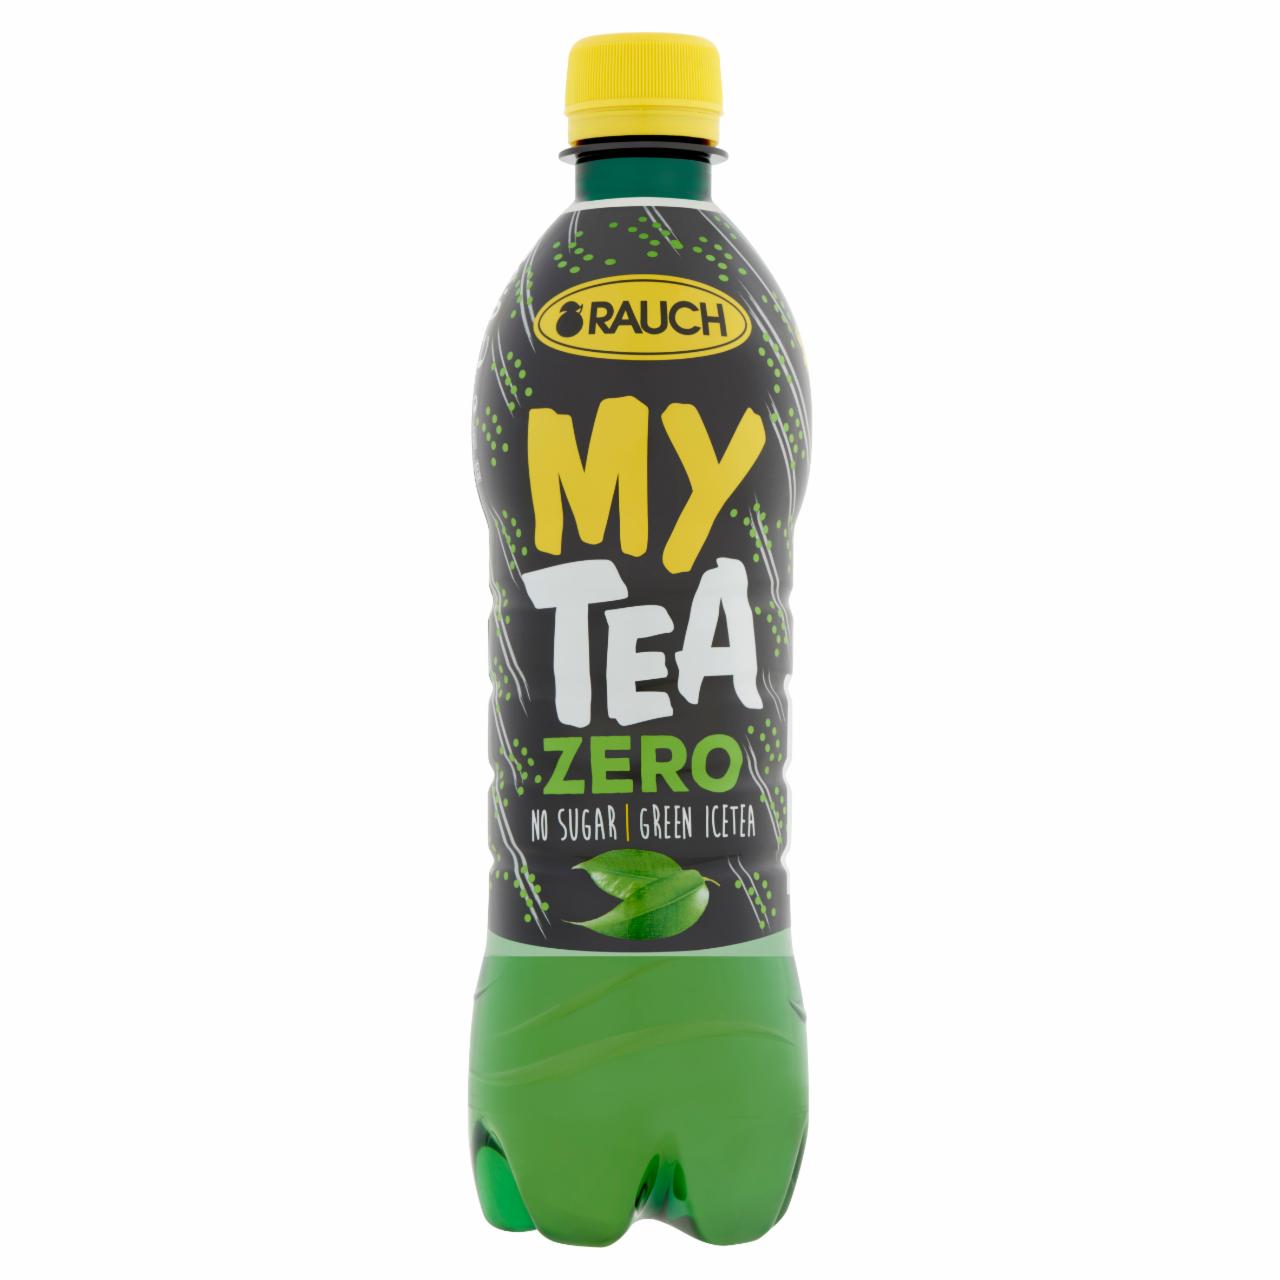 Képek - Rauch My Tea Zero cukormentes ice tea üdítőital zöld teából, édesítőszerekkel 0,5 l